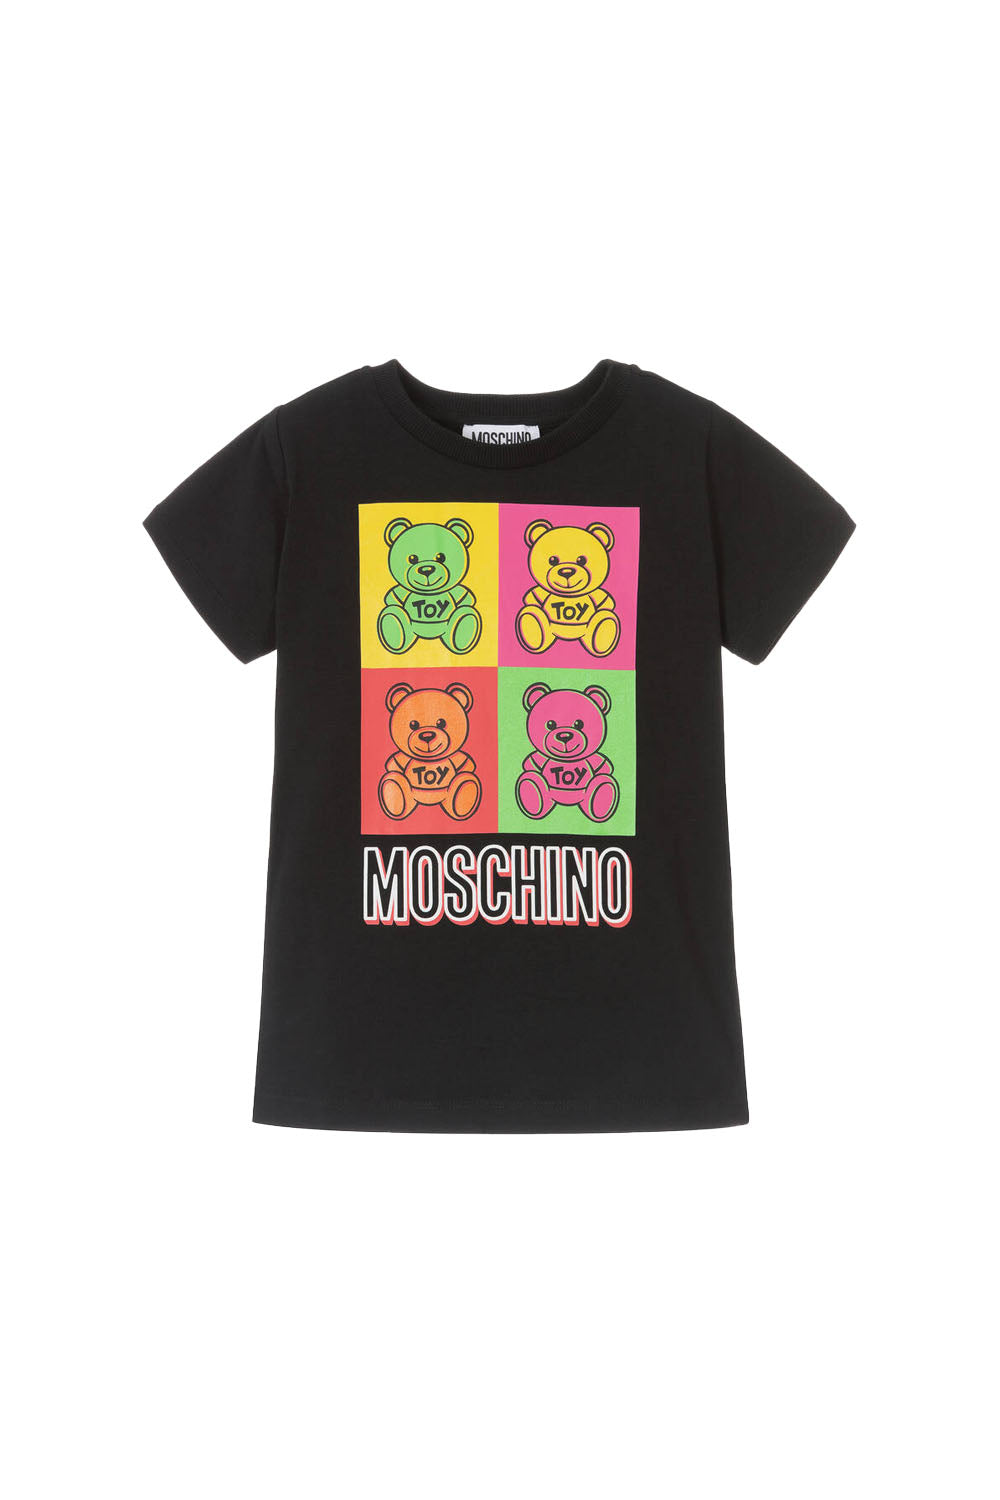 Multi Colour Teddy T Shirt for Boys - Maison7